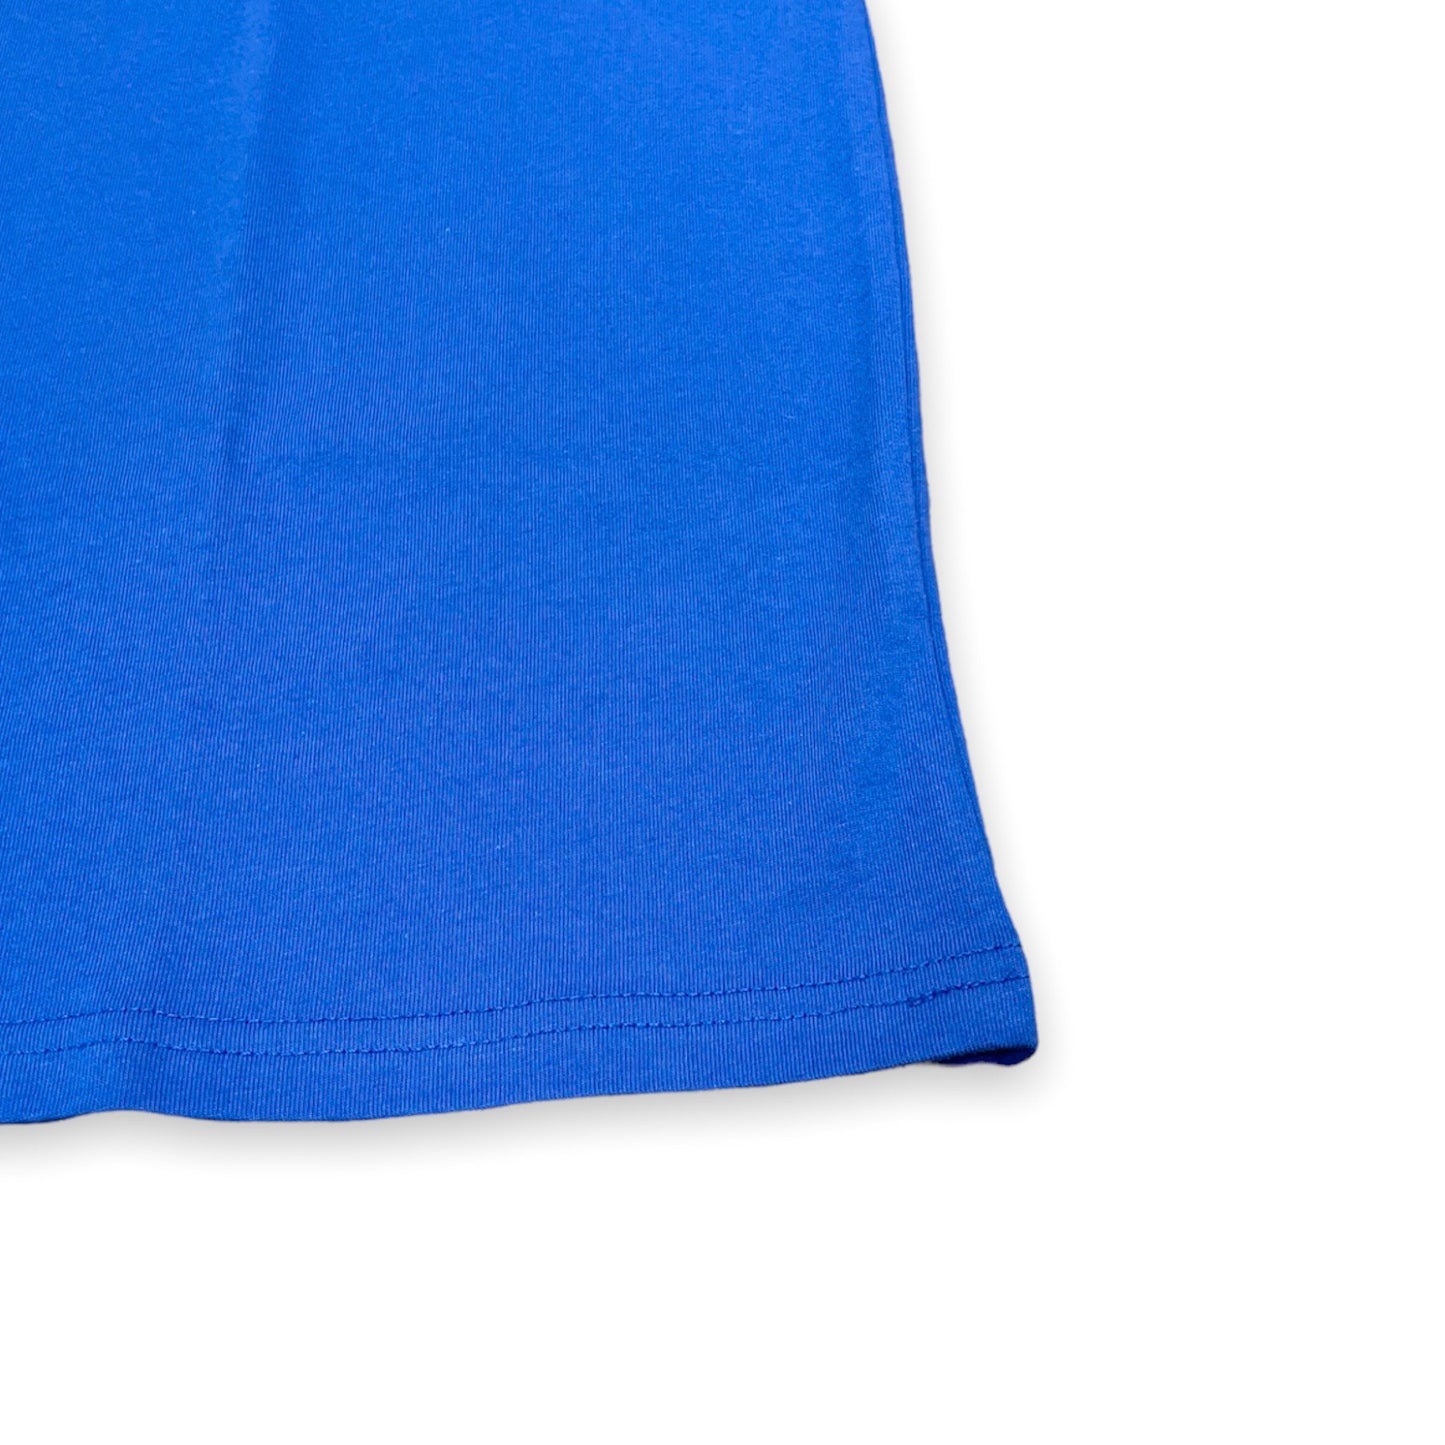 【Jamiroquai®︎×UNION originals - ジャミロクワイ× ユニオンオリジナルス】90's Graphic T-shirt / Blue (Tシャツ/ブルー)